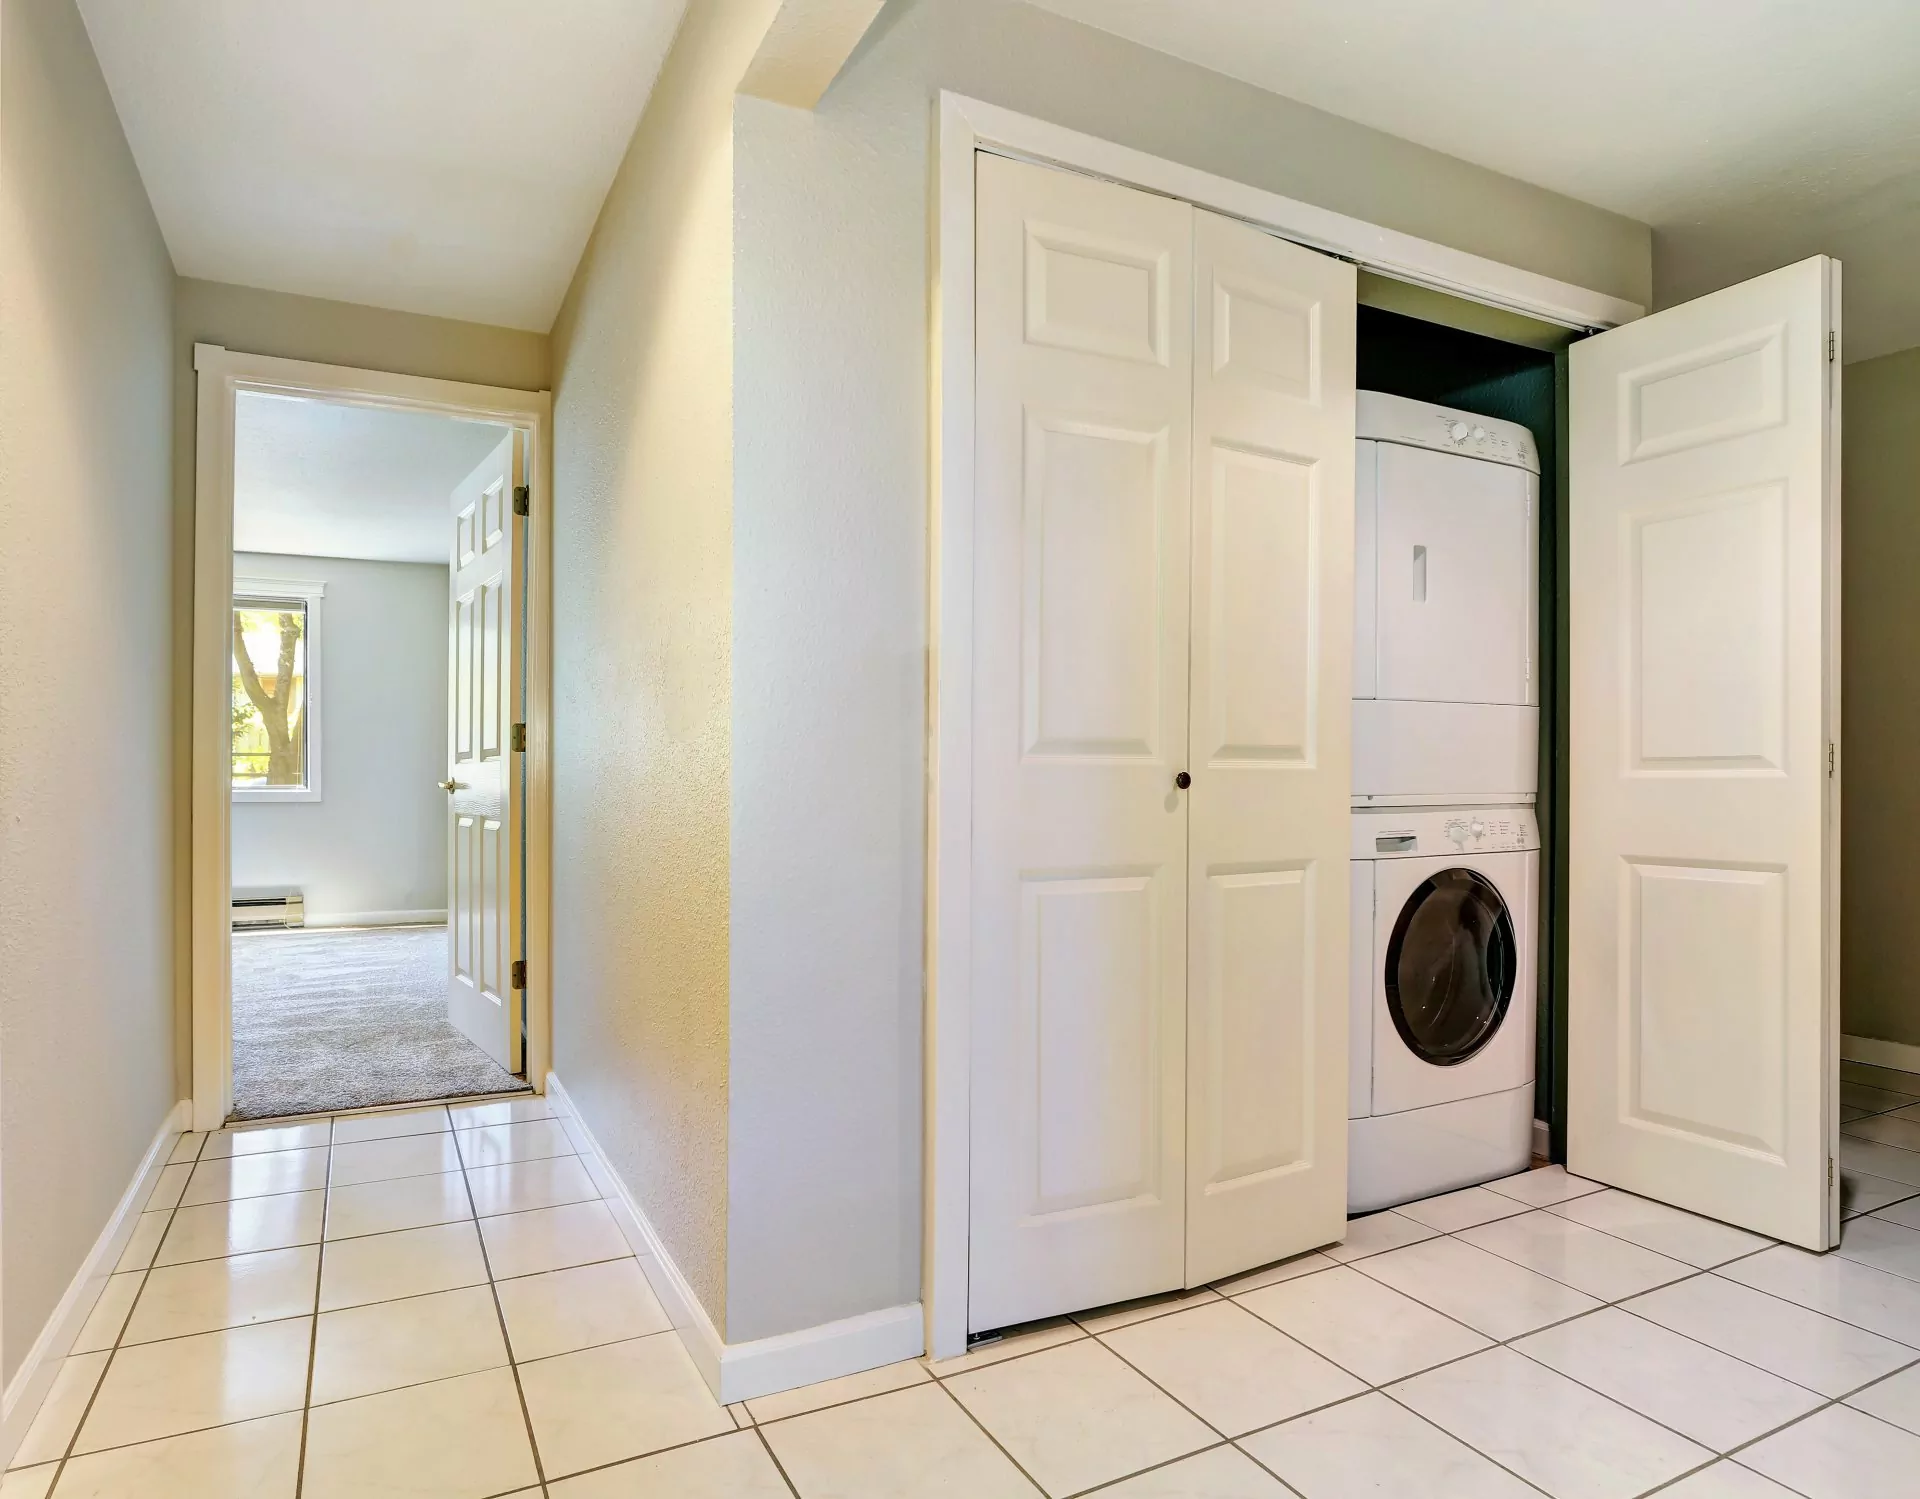 Miejsce dla pralki,Pralka w szafie gospodarczej,pralka w przedpokoju, pralka i suszarka schowana za białymi drzwiami w korytarzu